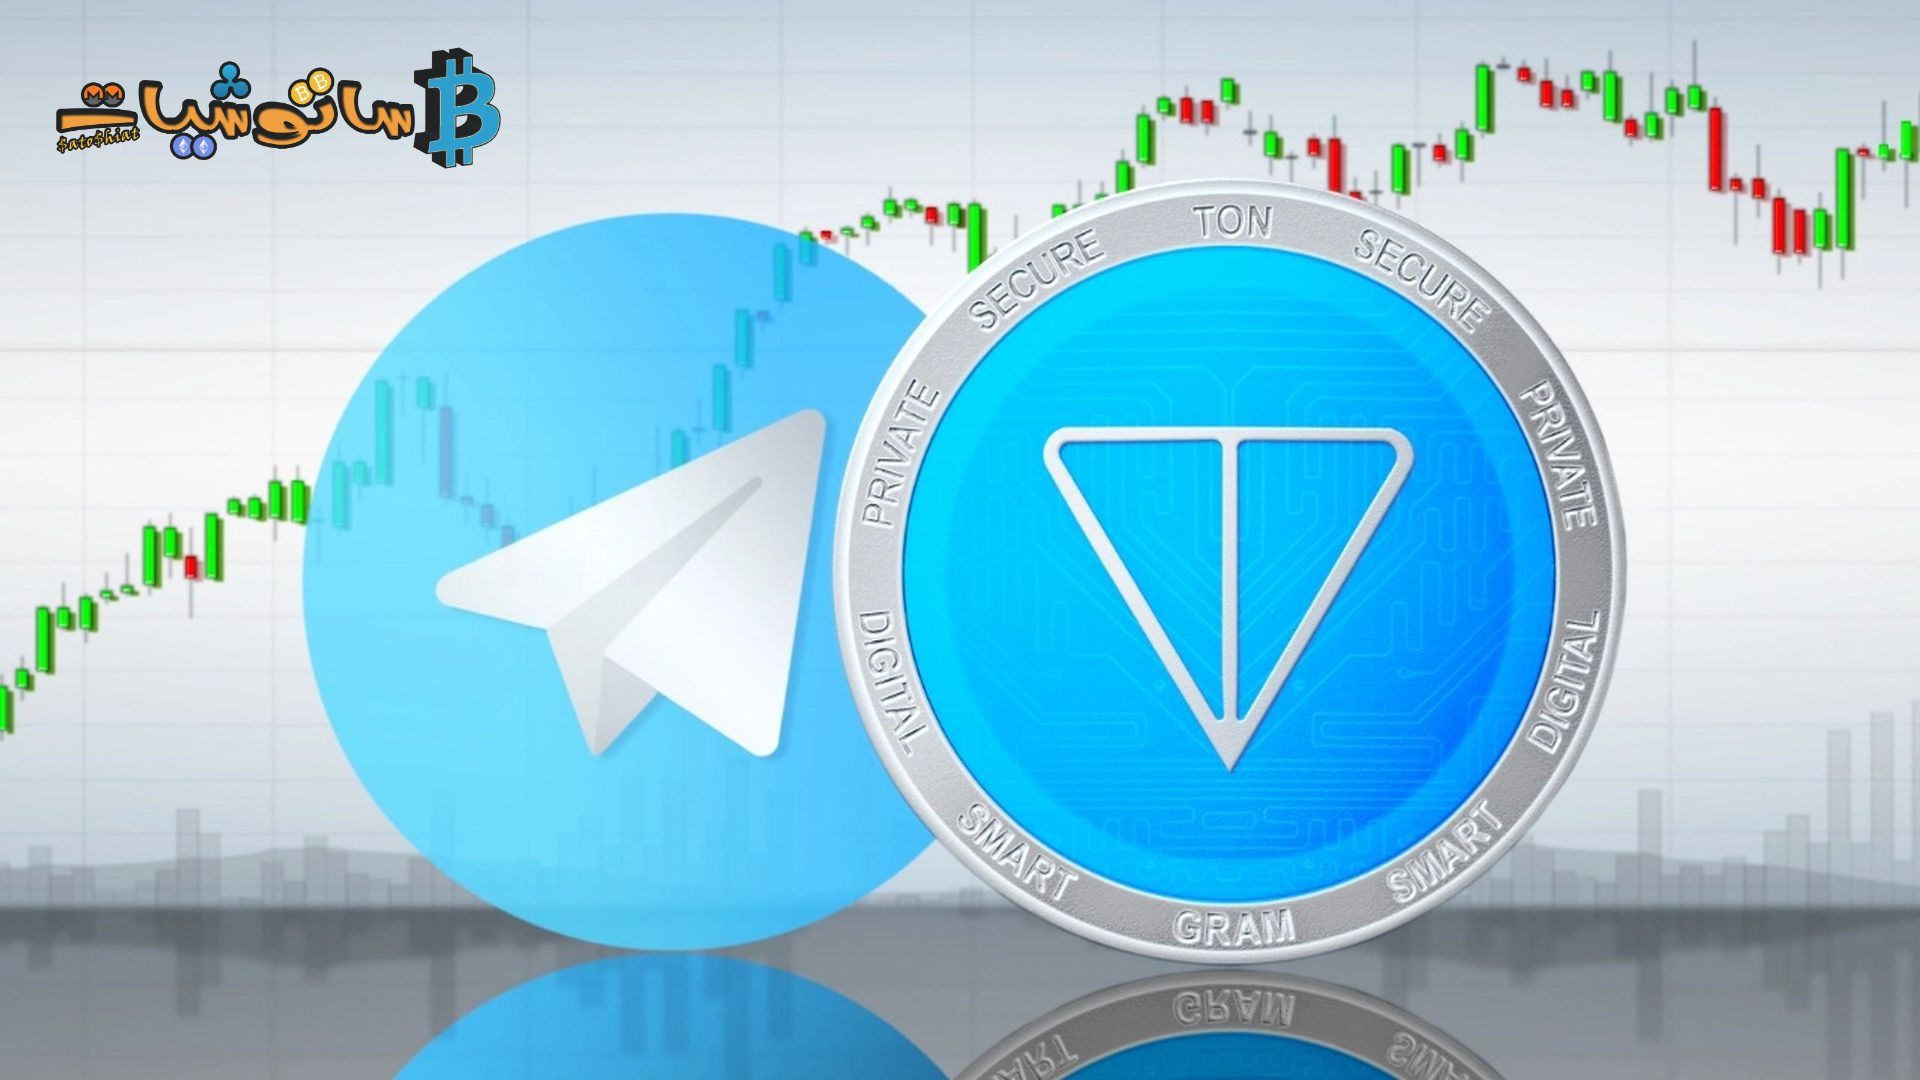 أعلنت TON عن بوت تداول العملات الرقمية داخل تطبيق Telegram